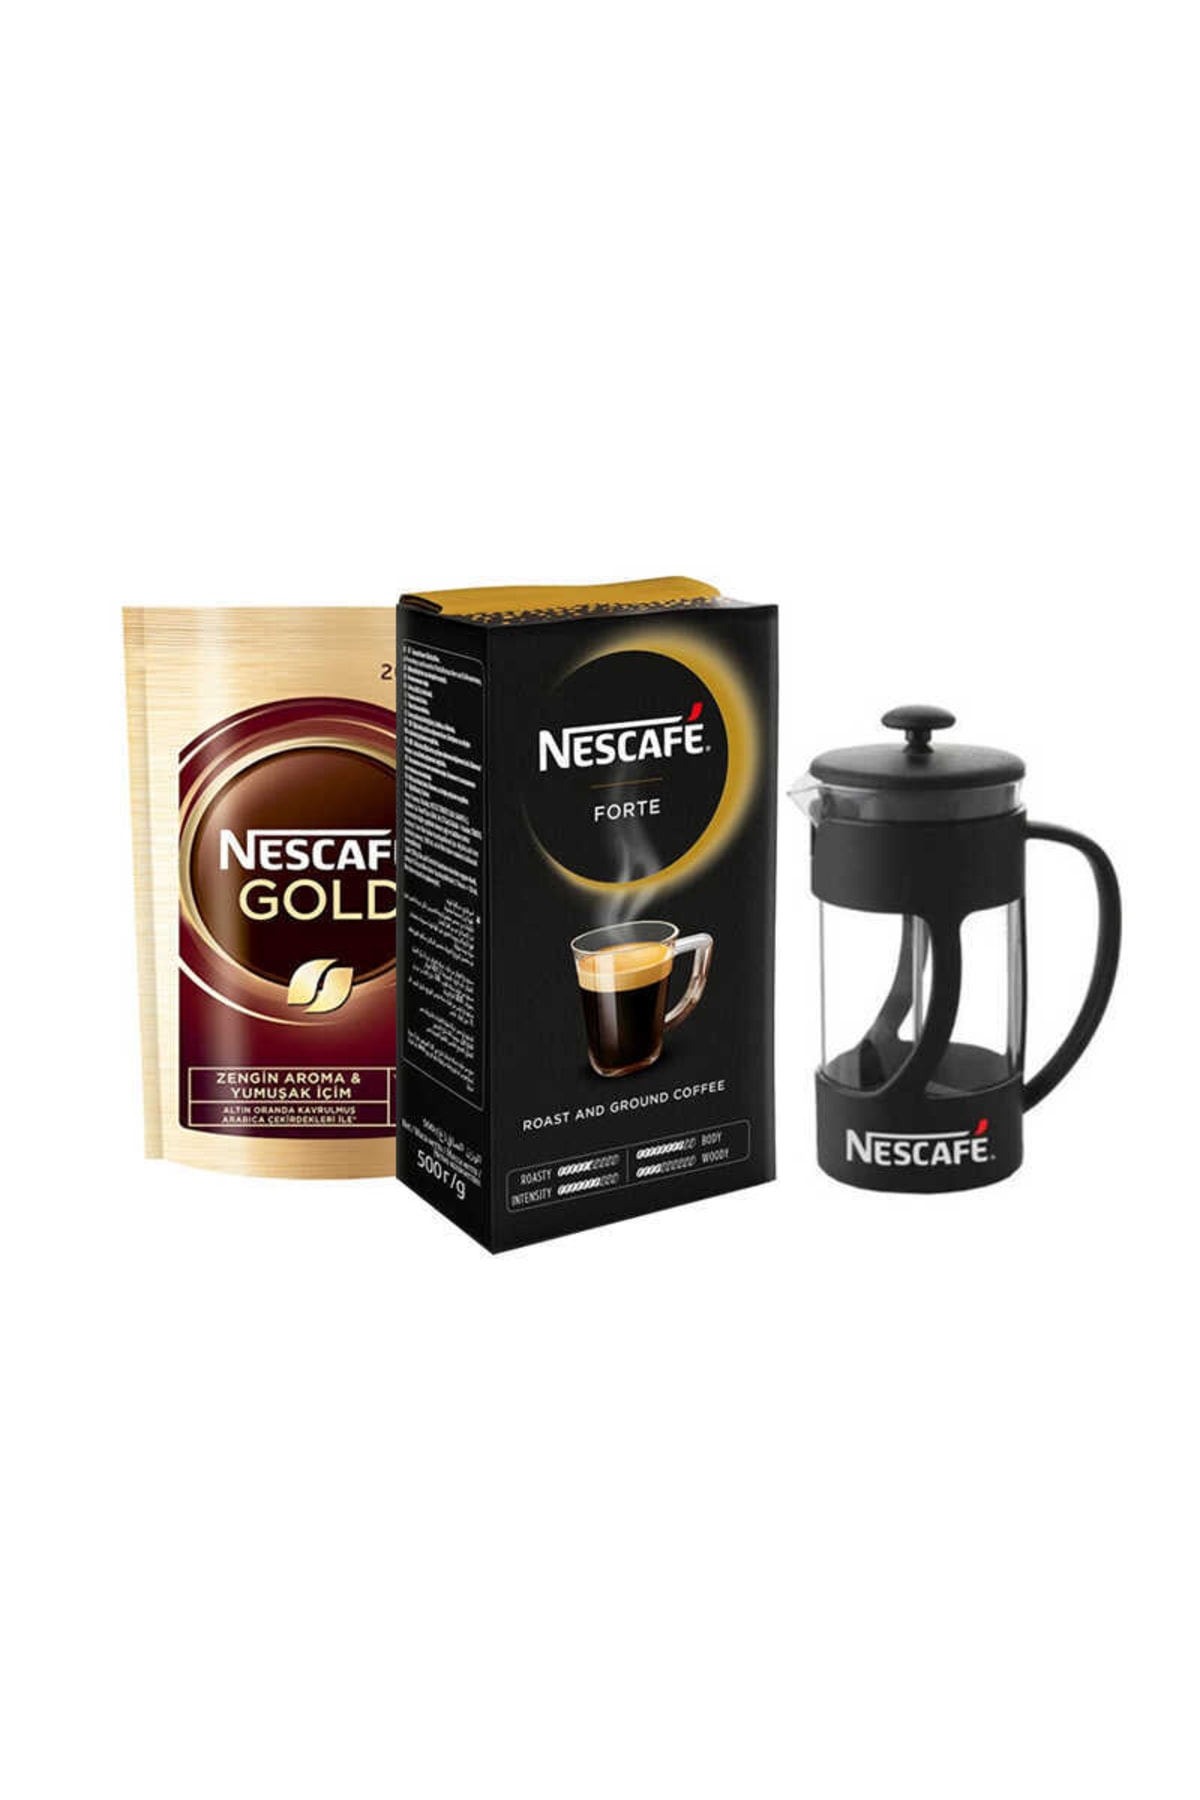 Nescafe Mp Gold Eko Paket 200 Gr Forte Öğütülmüş Filtre Kahve 500gr + French Press